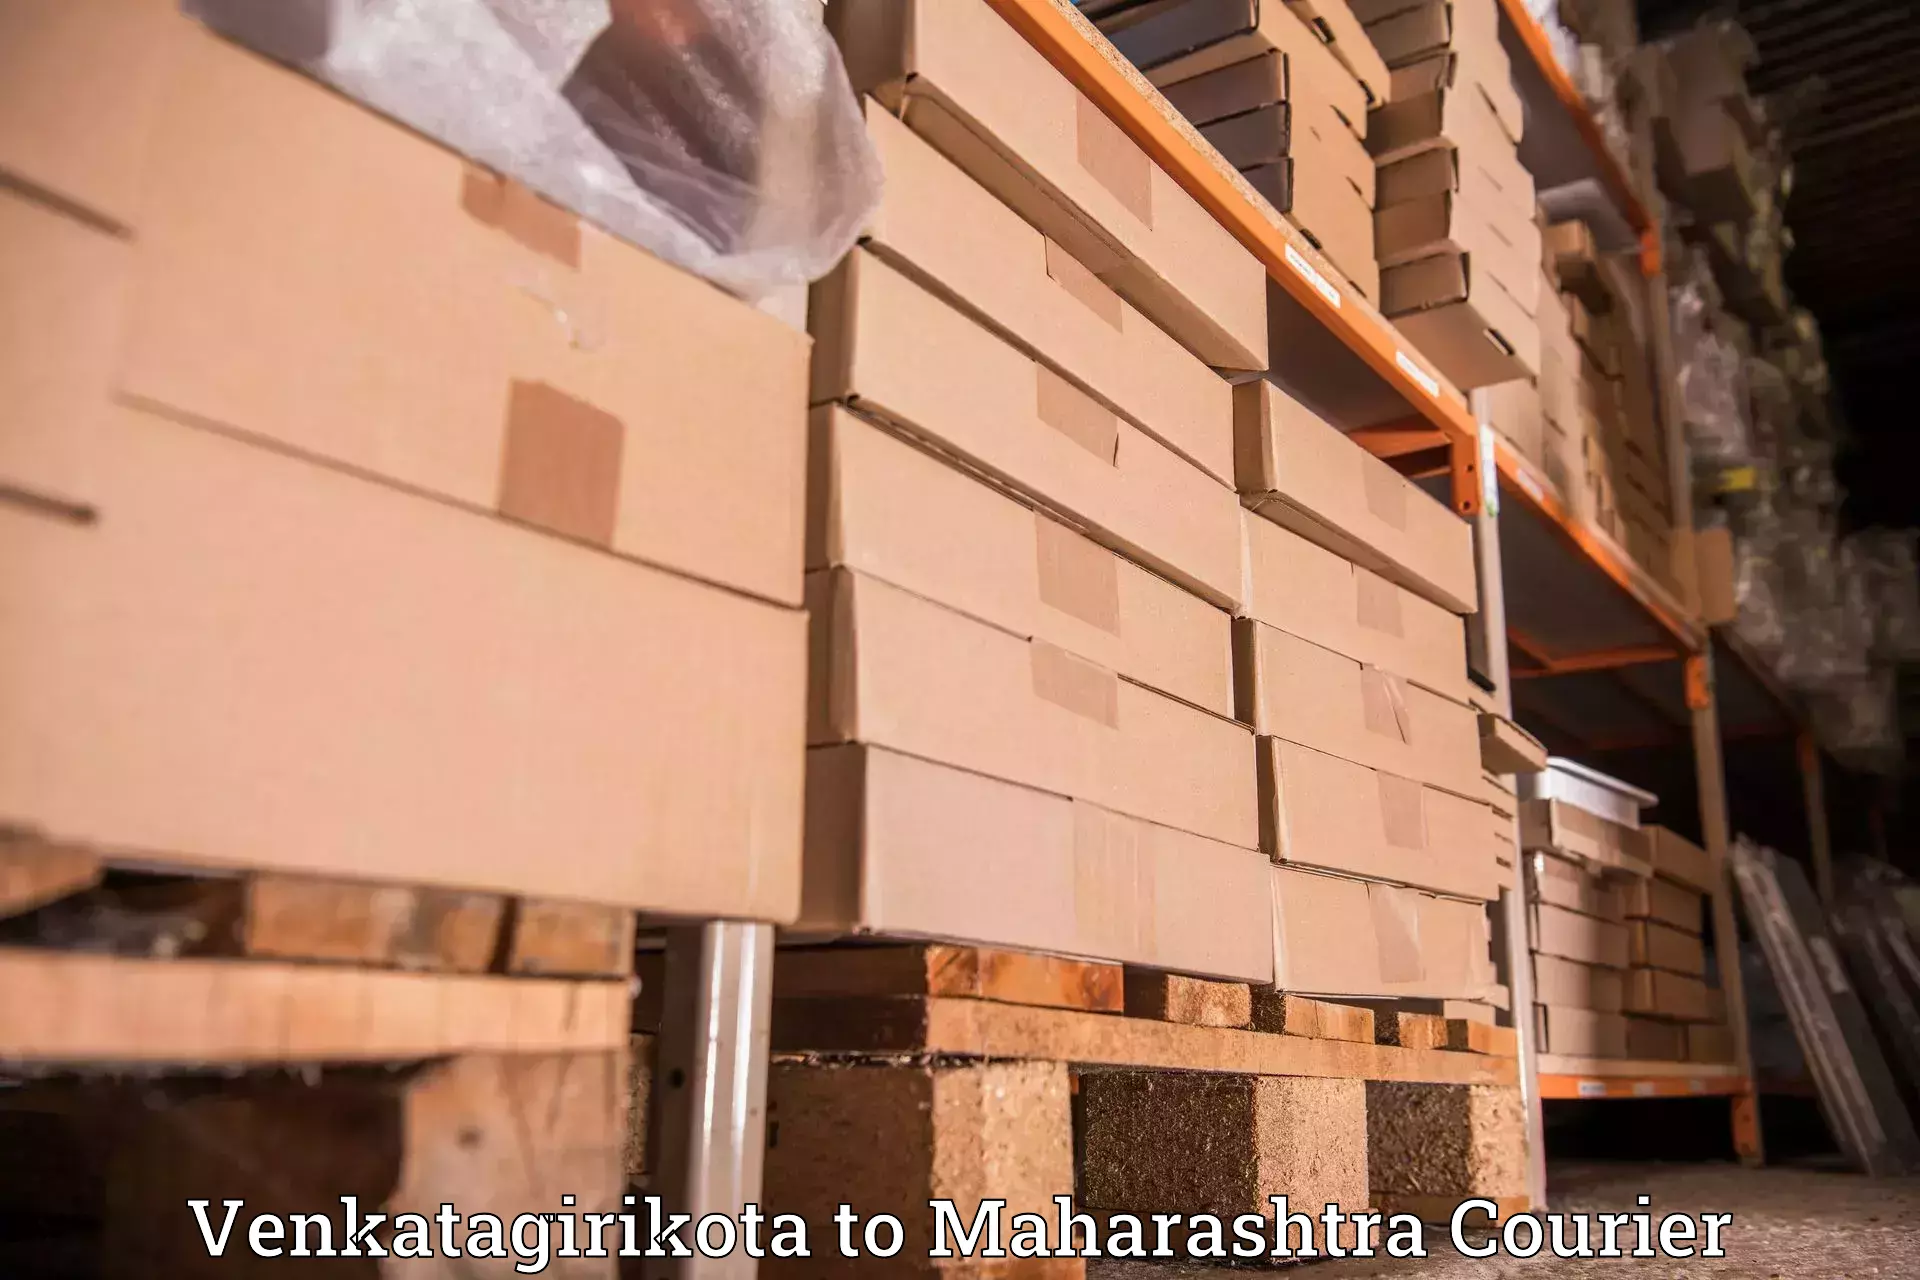 User-friendly delivery service Venkatagirikota to Mangaon